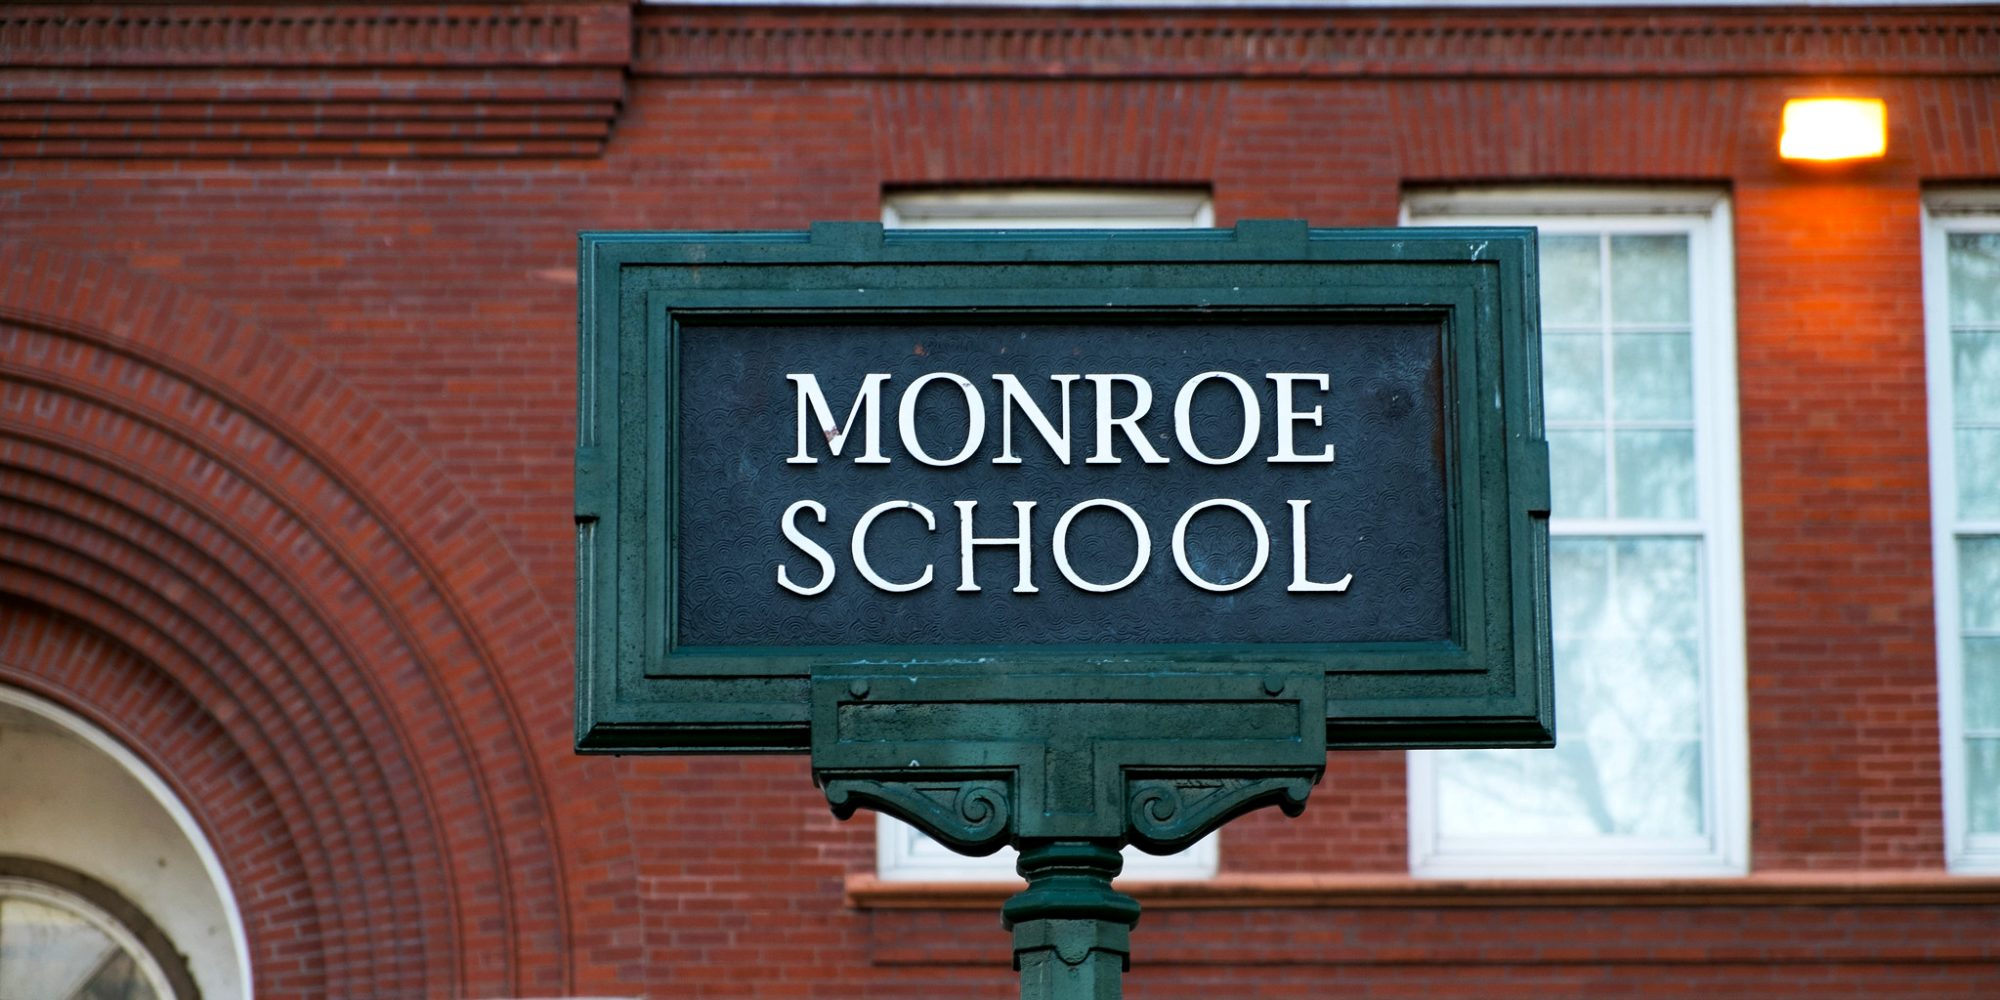 Monroe Elementary School dans le quartier Marine Villa. Photo de Paul Sableman.